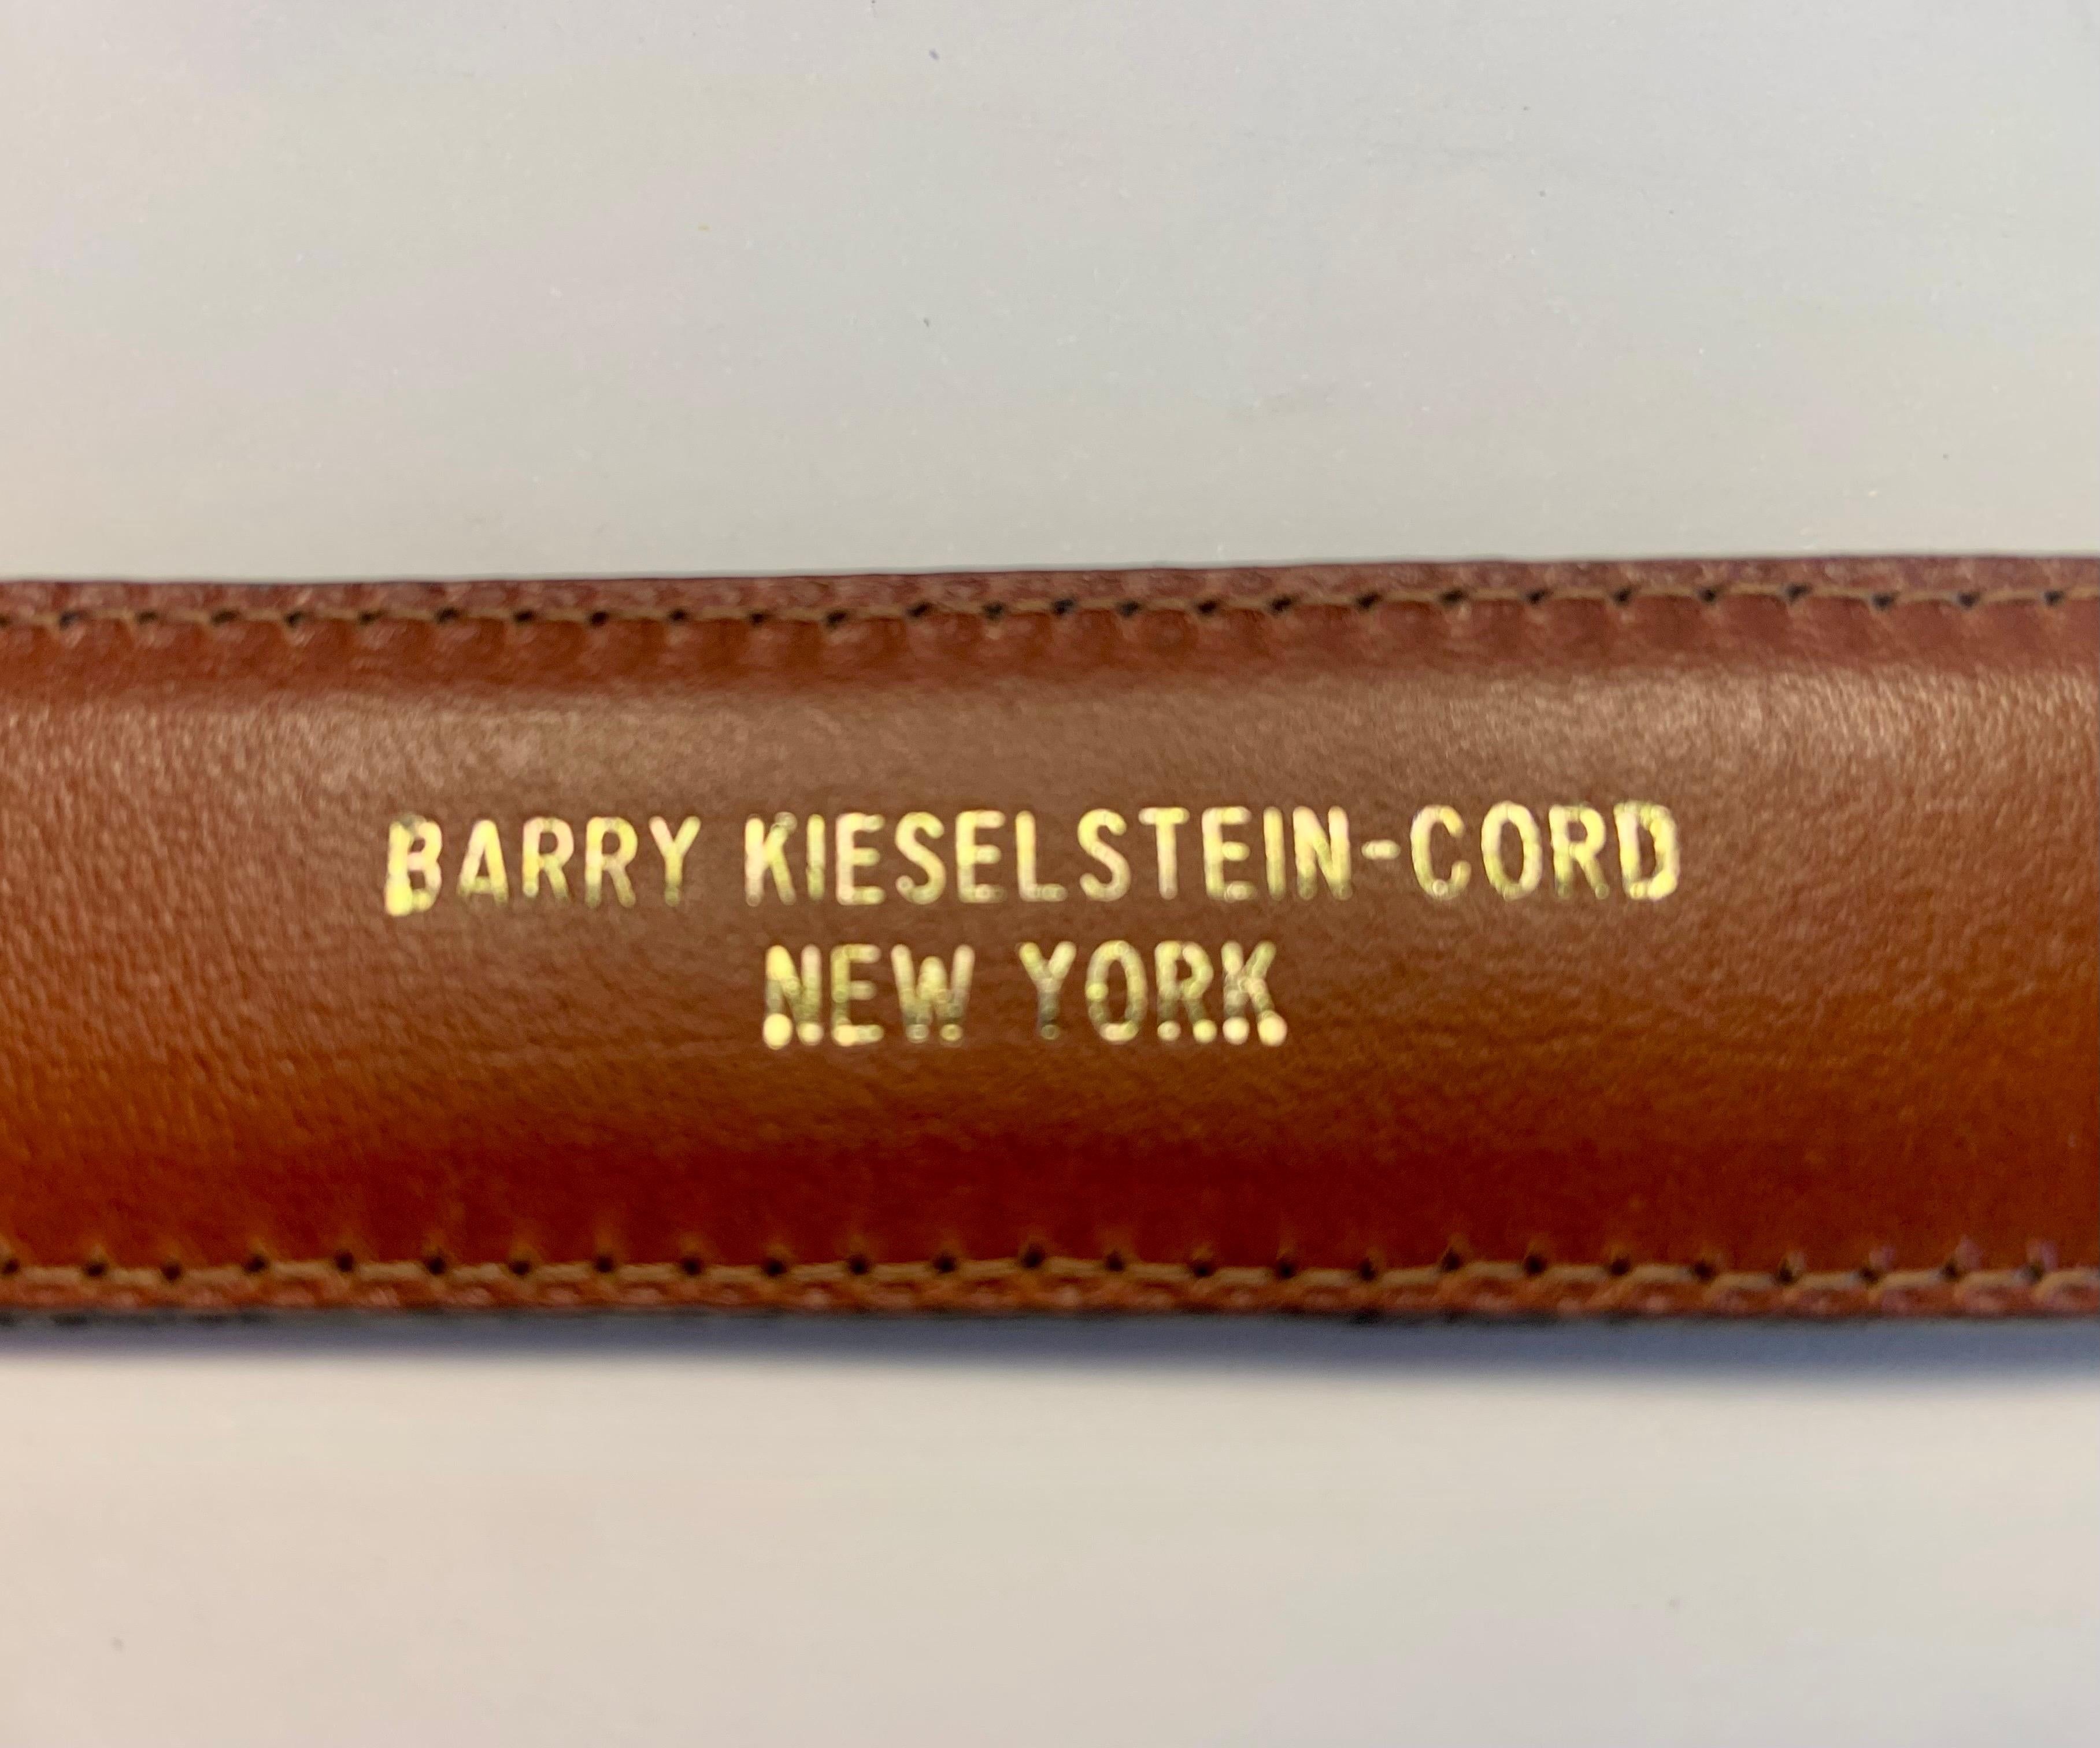 Barry Kieselstein-Cord Sterling Heart Buckle and Black Lizard Belt Never Worn 2